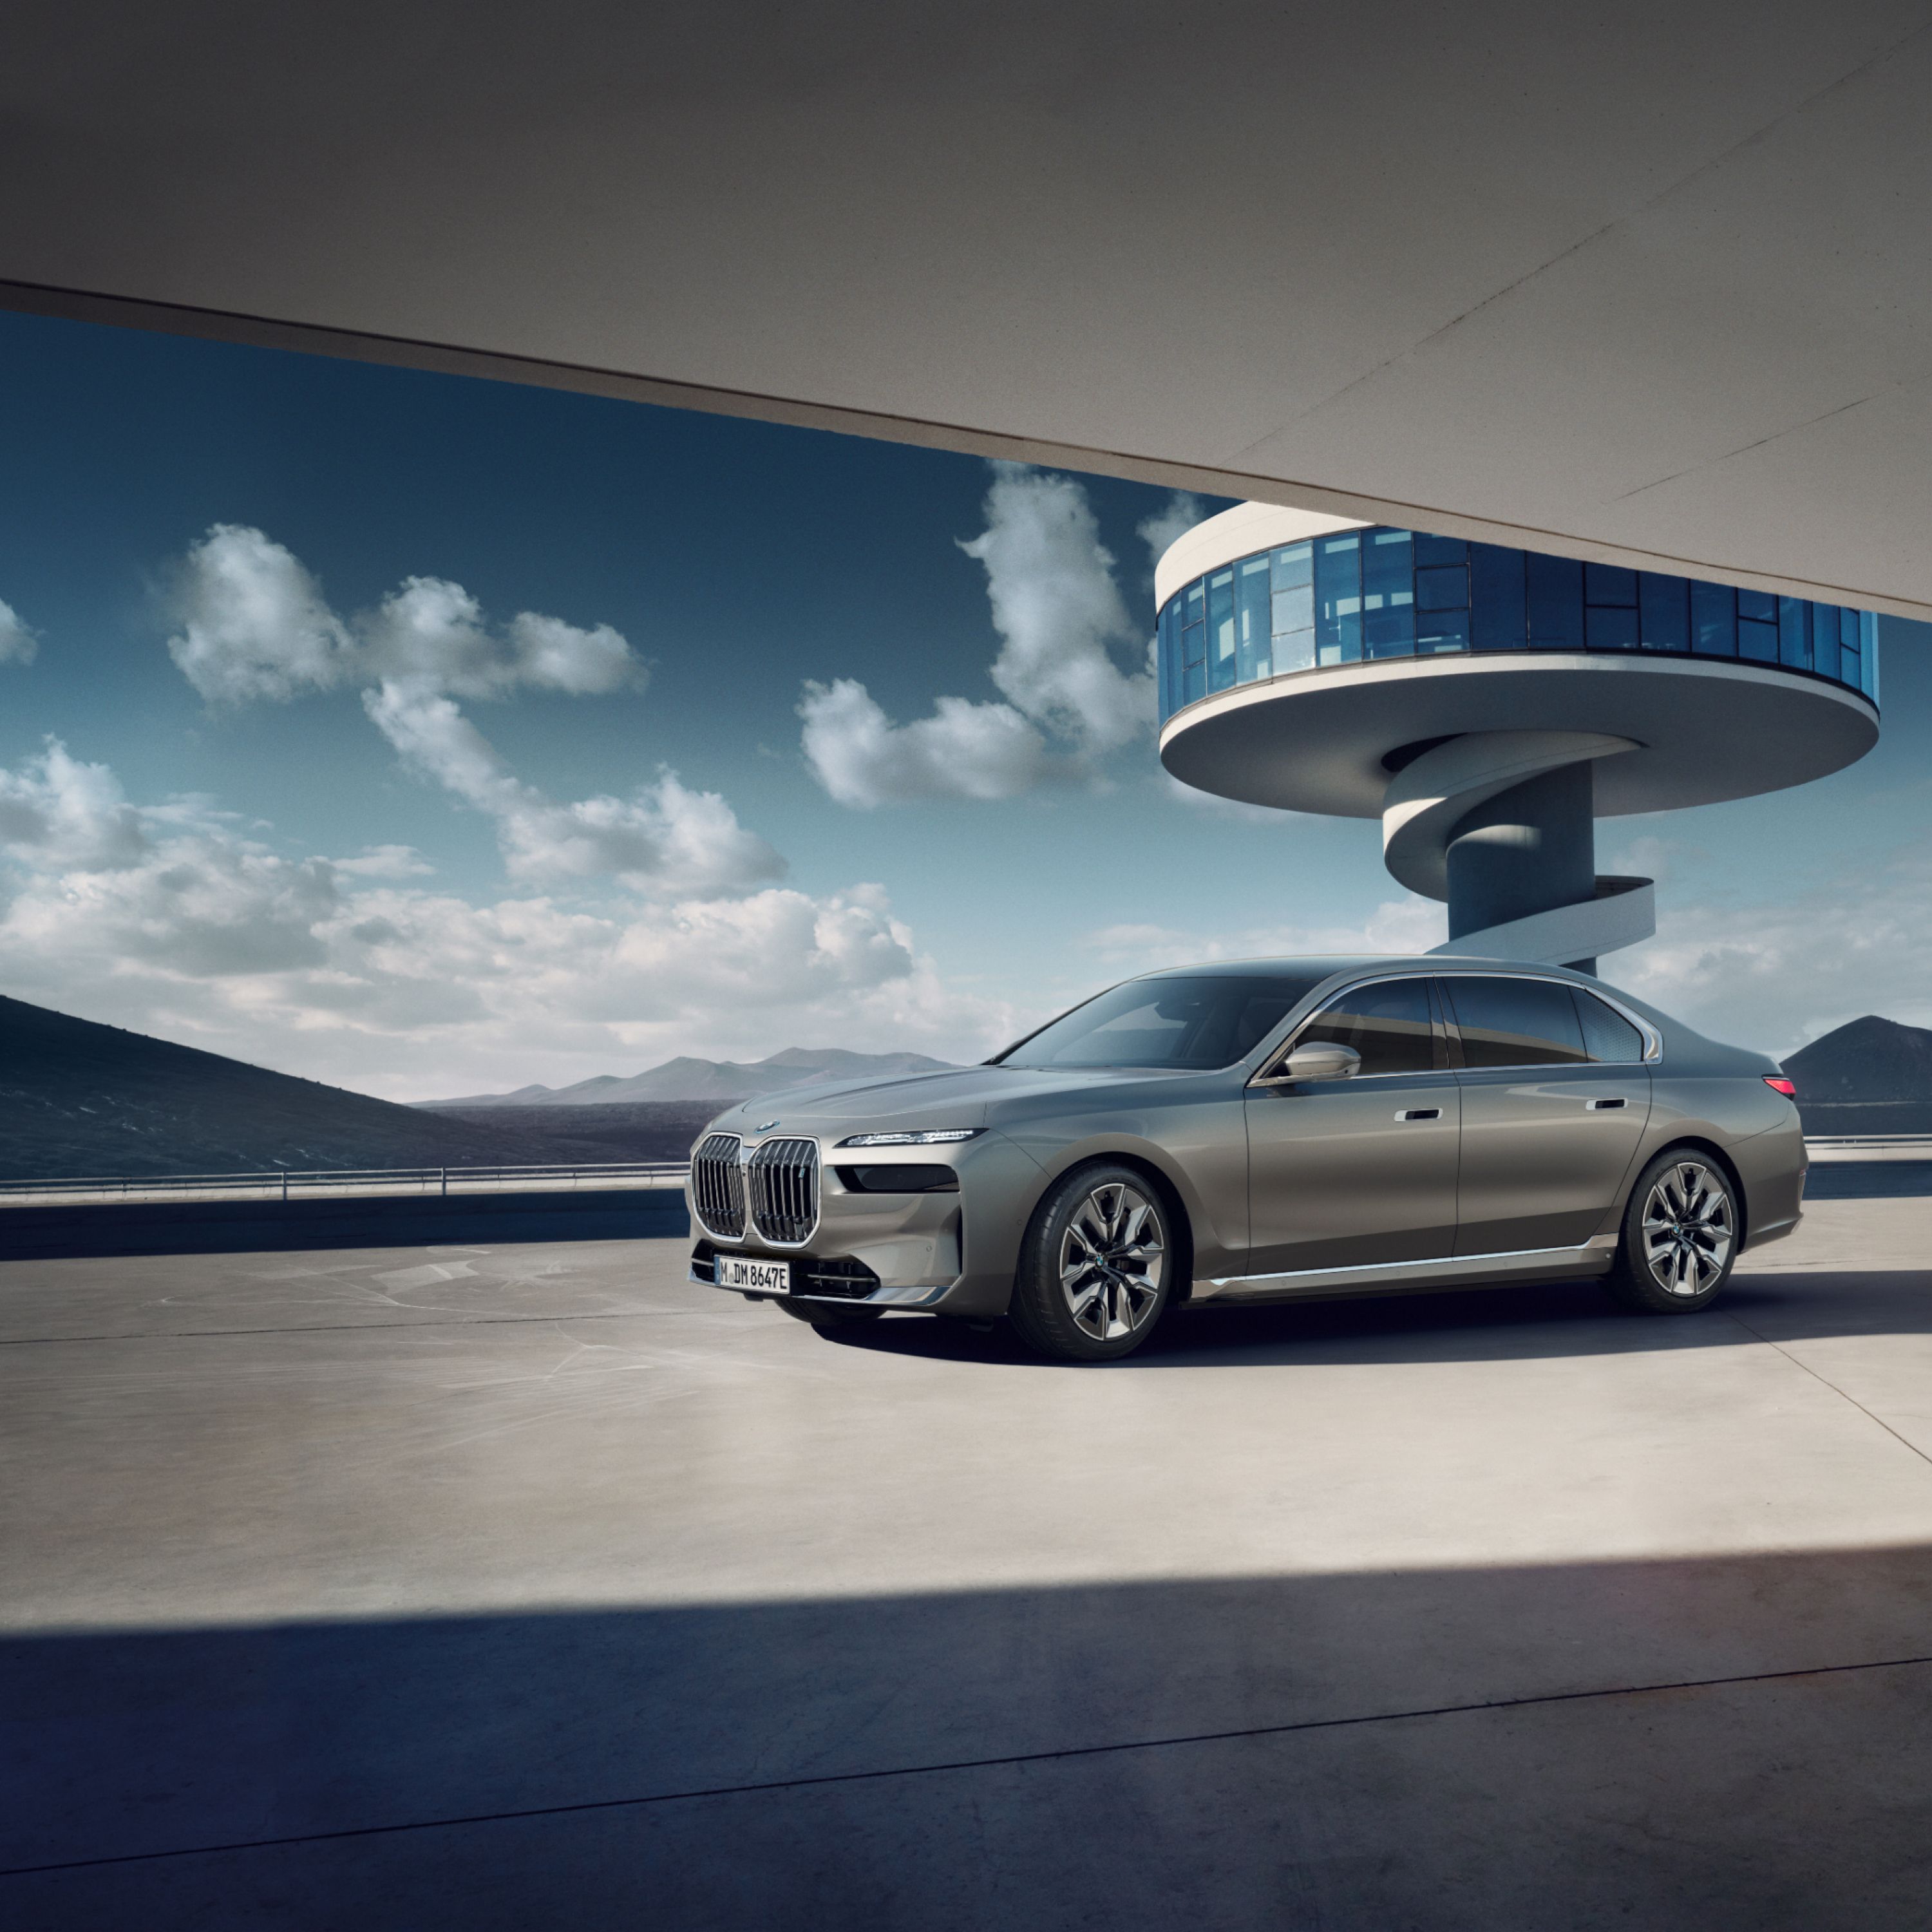 BMW i7 xDrive60 pe şosea, în faţa unui turn cu o scară în spirală şi o panoramă montană în spate.